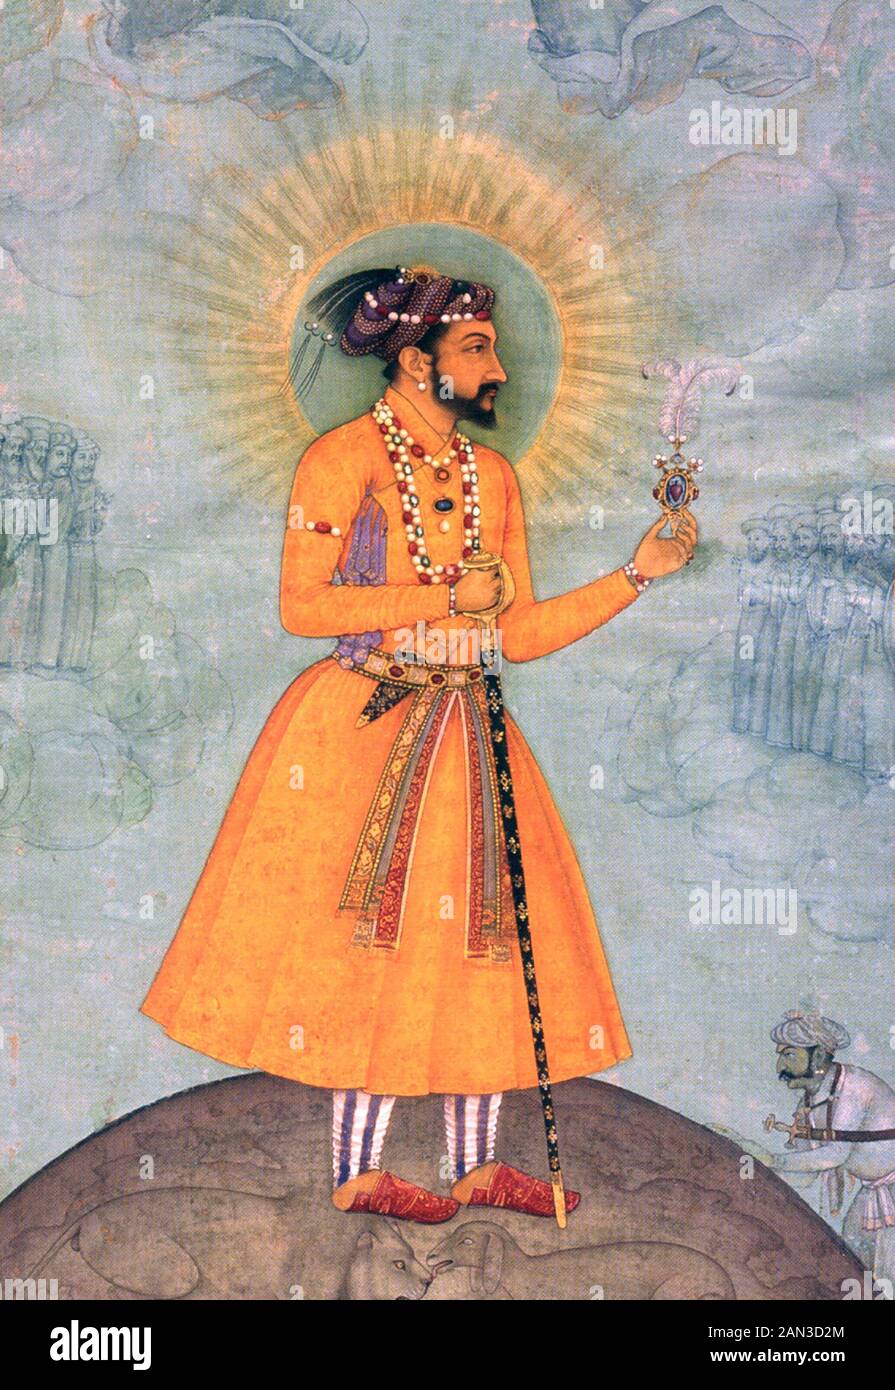 SHAH JAHAN (1592-1666) quinto imperatore Mughal che ha creato il Taj Mahal Foto Stock